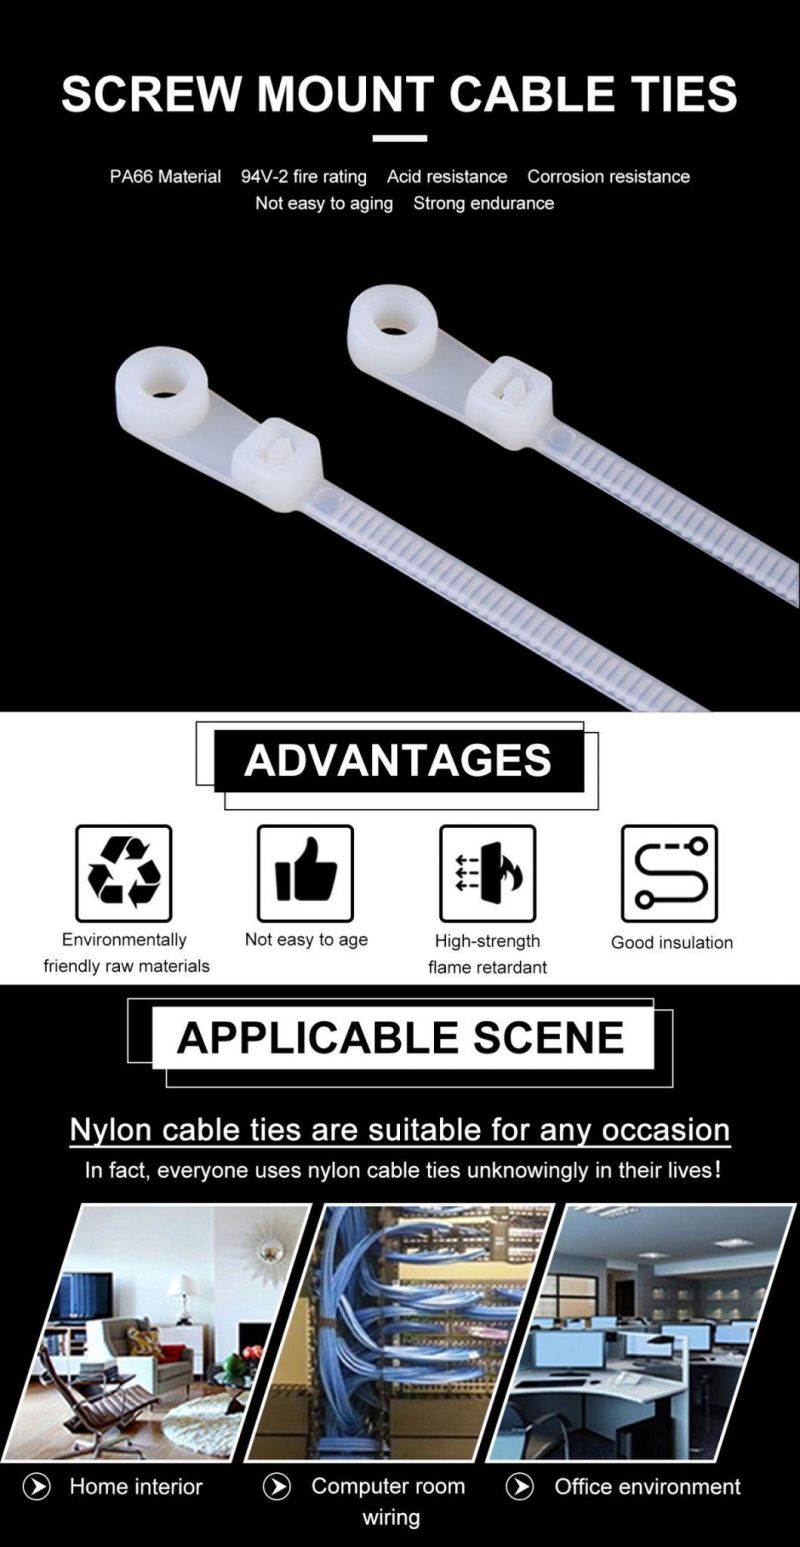 5*300 Nylon UL Screw Mount Cable Ties